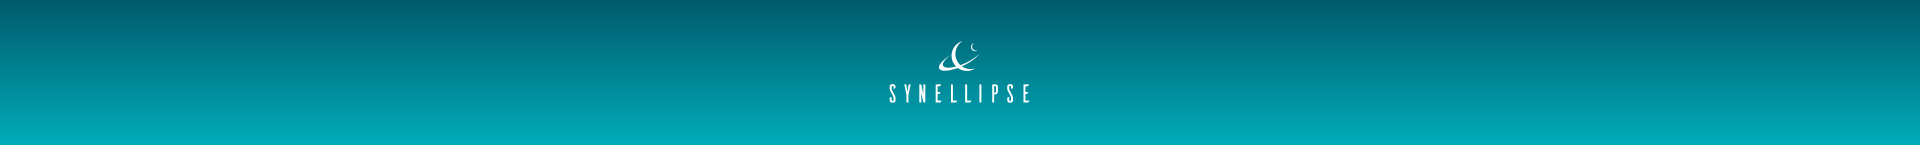 Synellipse - Éric Joly